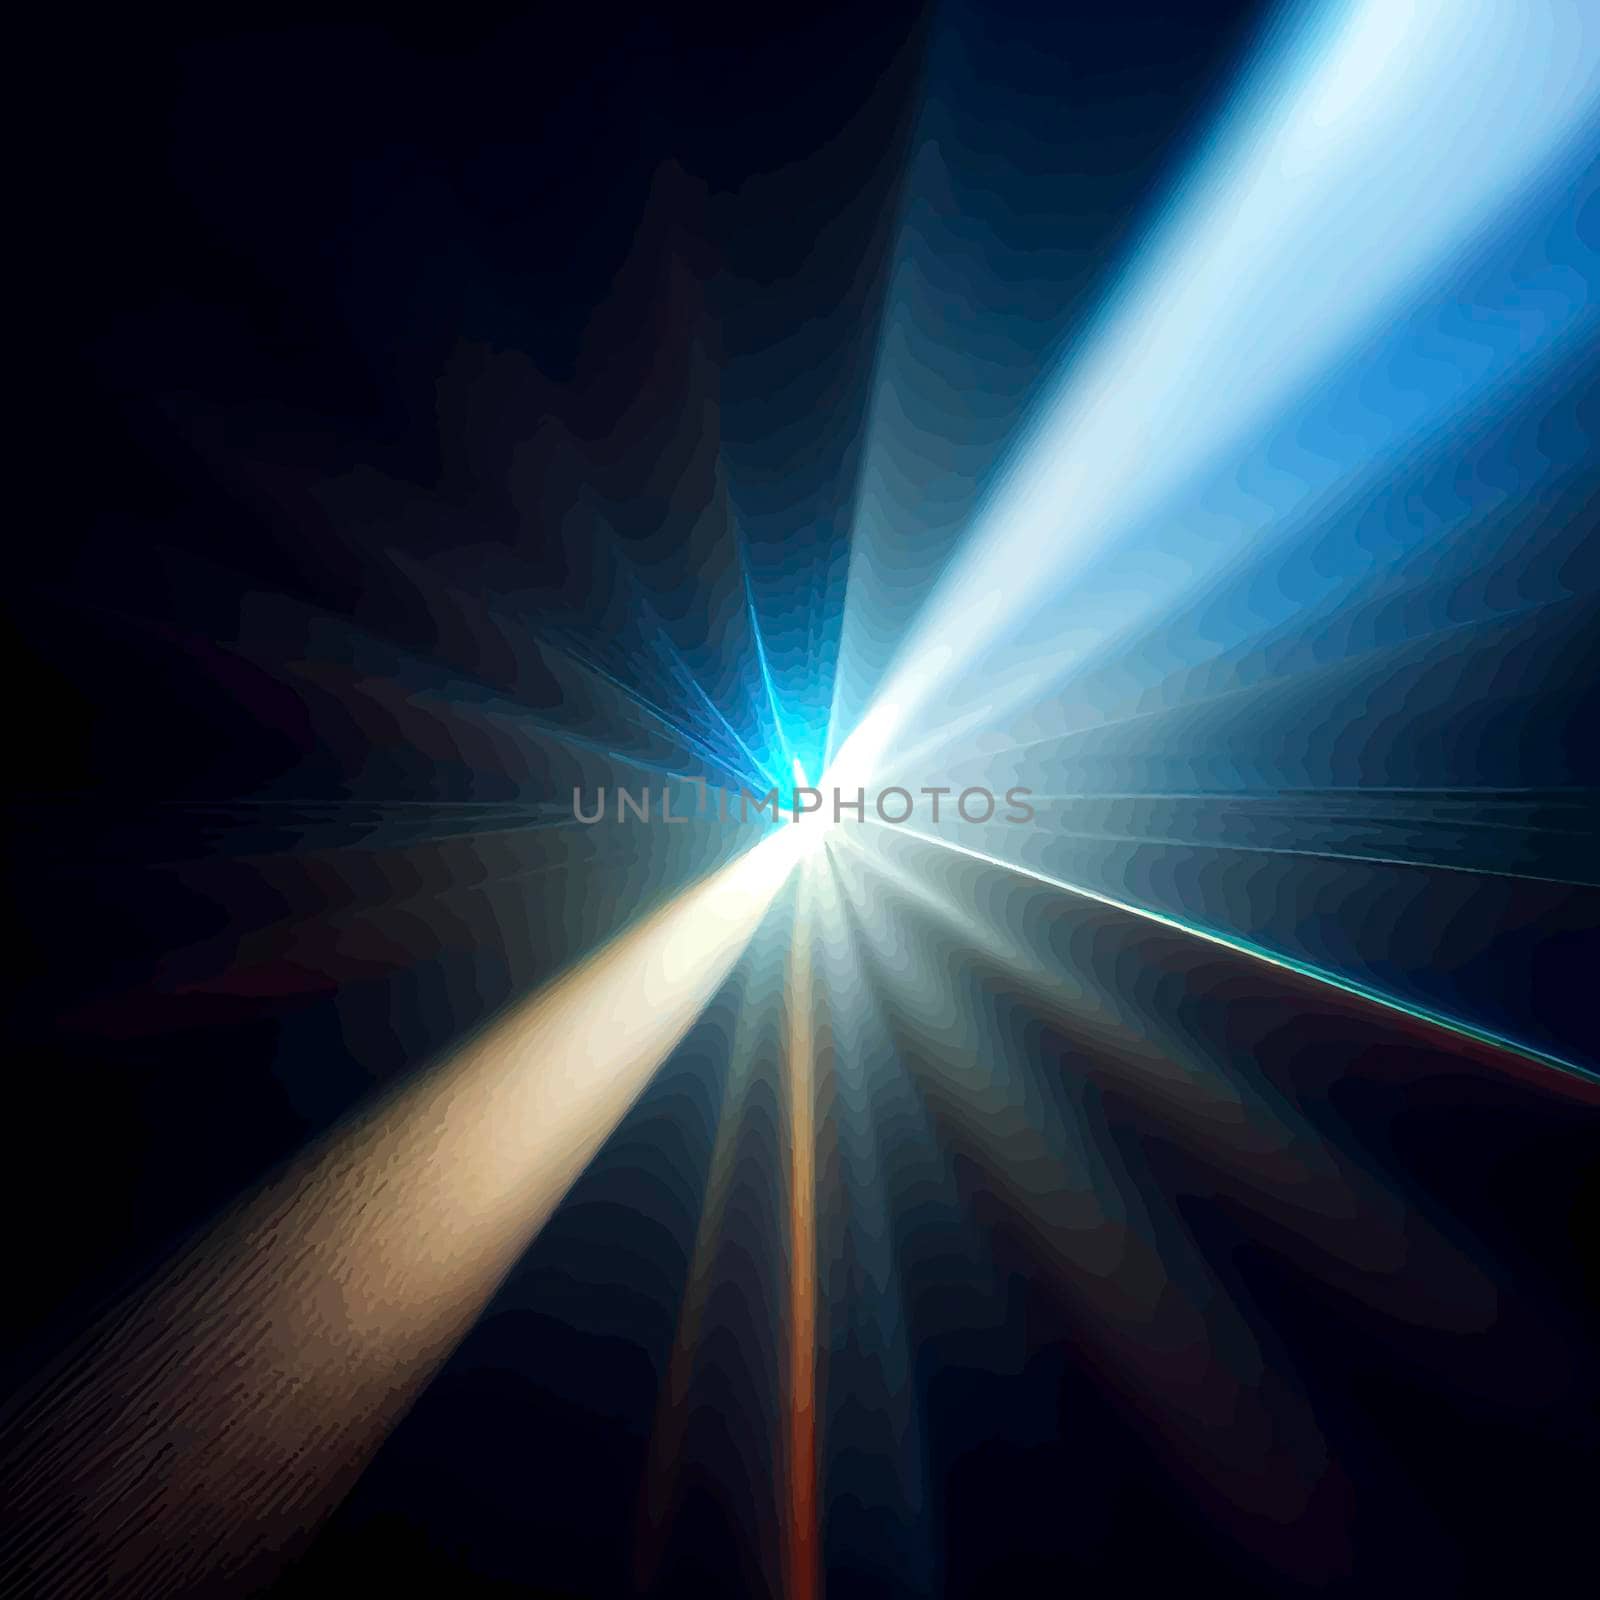 blue Light Lens flare on black background. Lens flare with bright light isolated with a black background by JpRamos